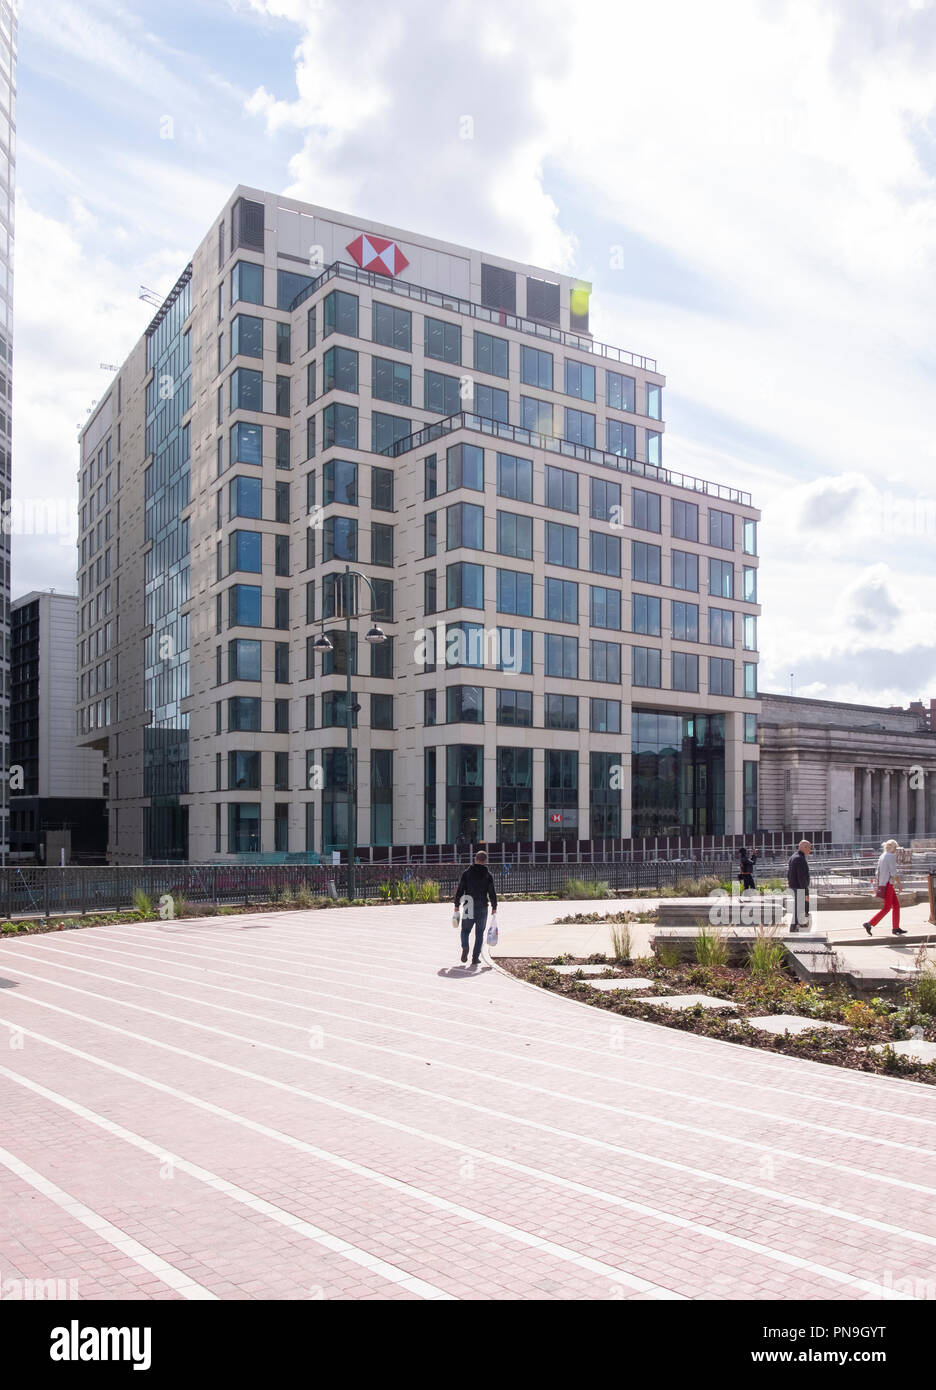 La sede de HSBC en el centro de Birmingham, Inglaterra. Foto de stock